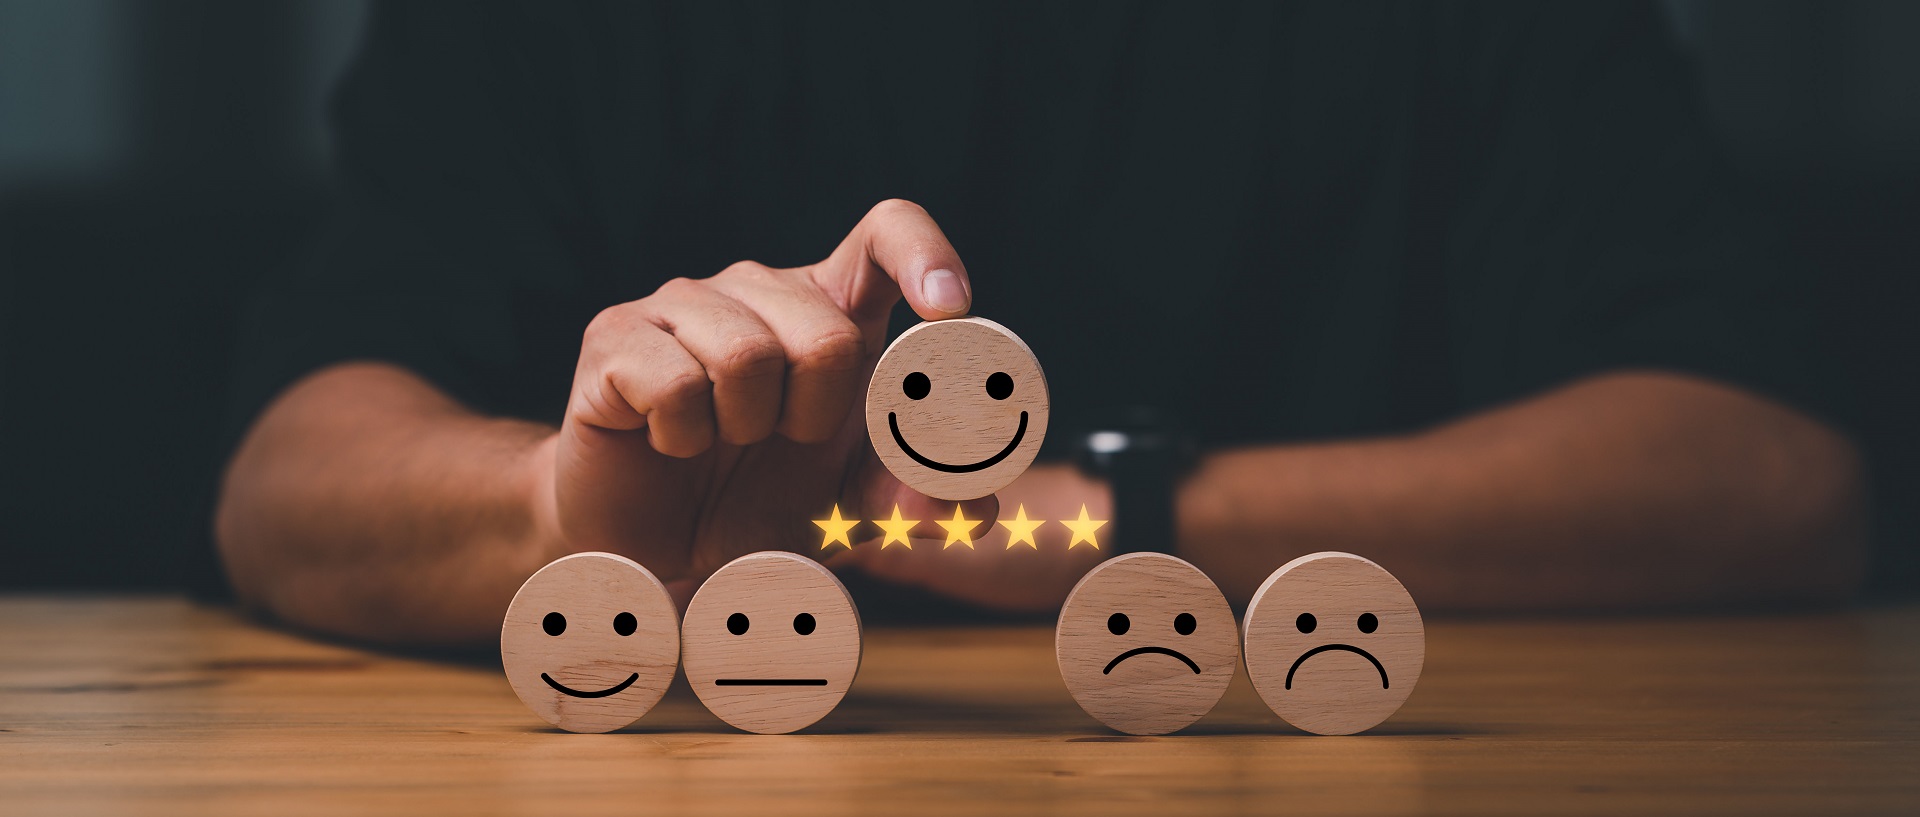 Feedback-Smileys für Kundenbewertung & Erfahrung mit MyArtSide